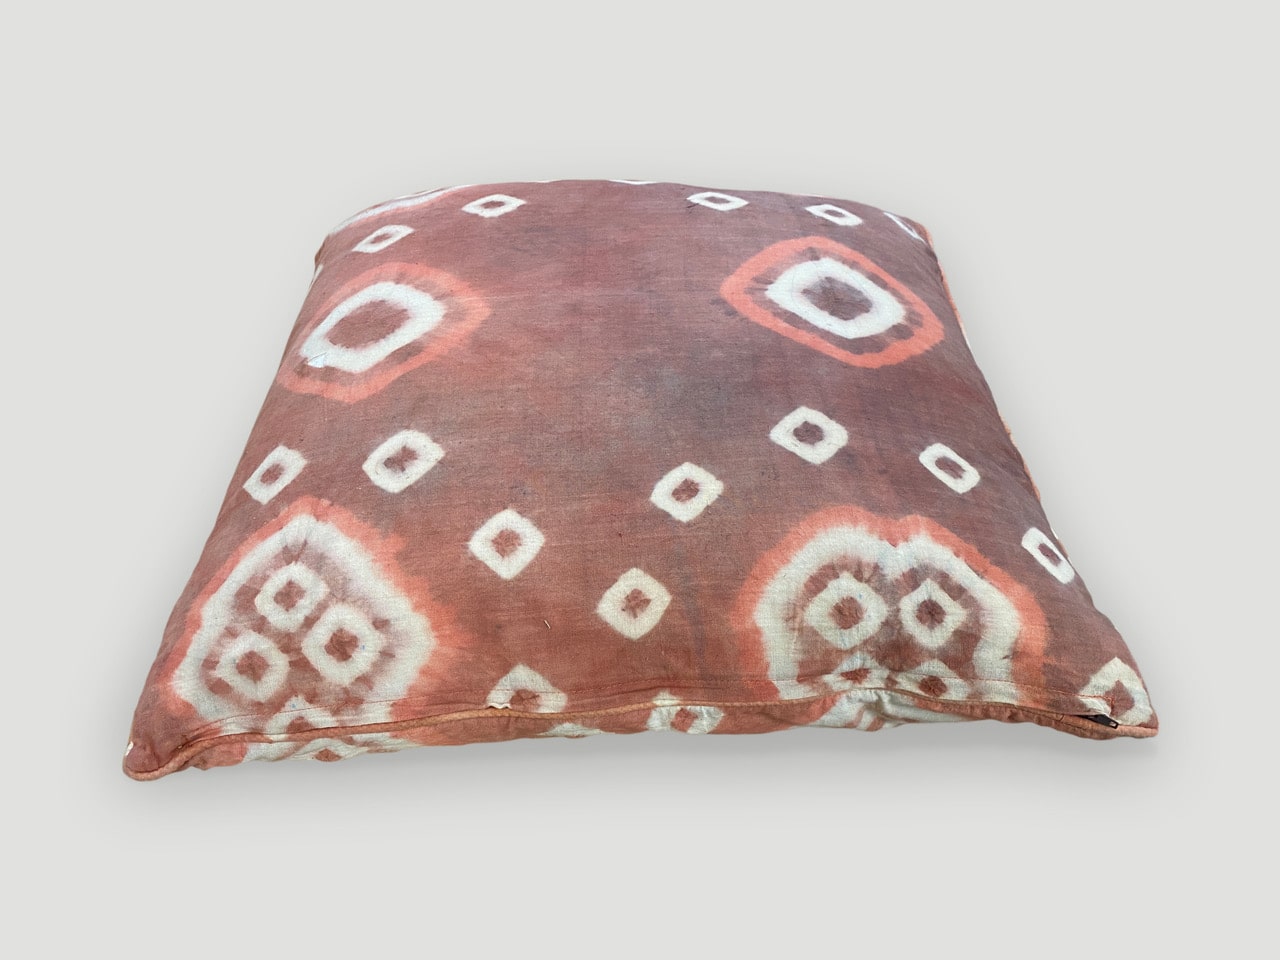 antique textile pillow